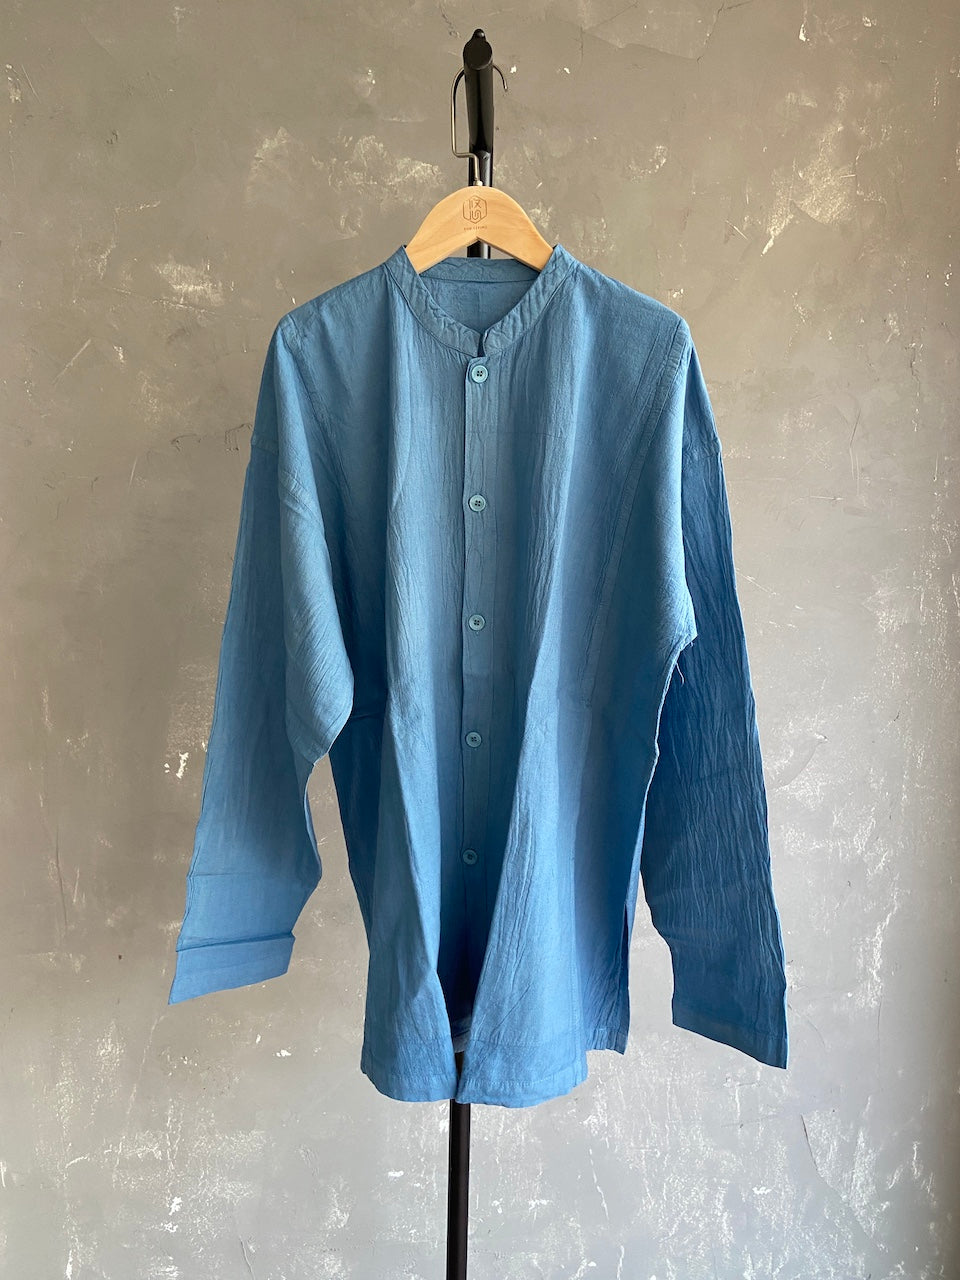 Hand-dyed Button Shirt - Long Sleeve (Light blue #21)